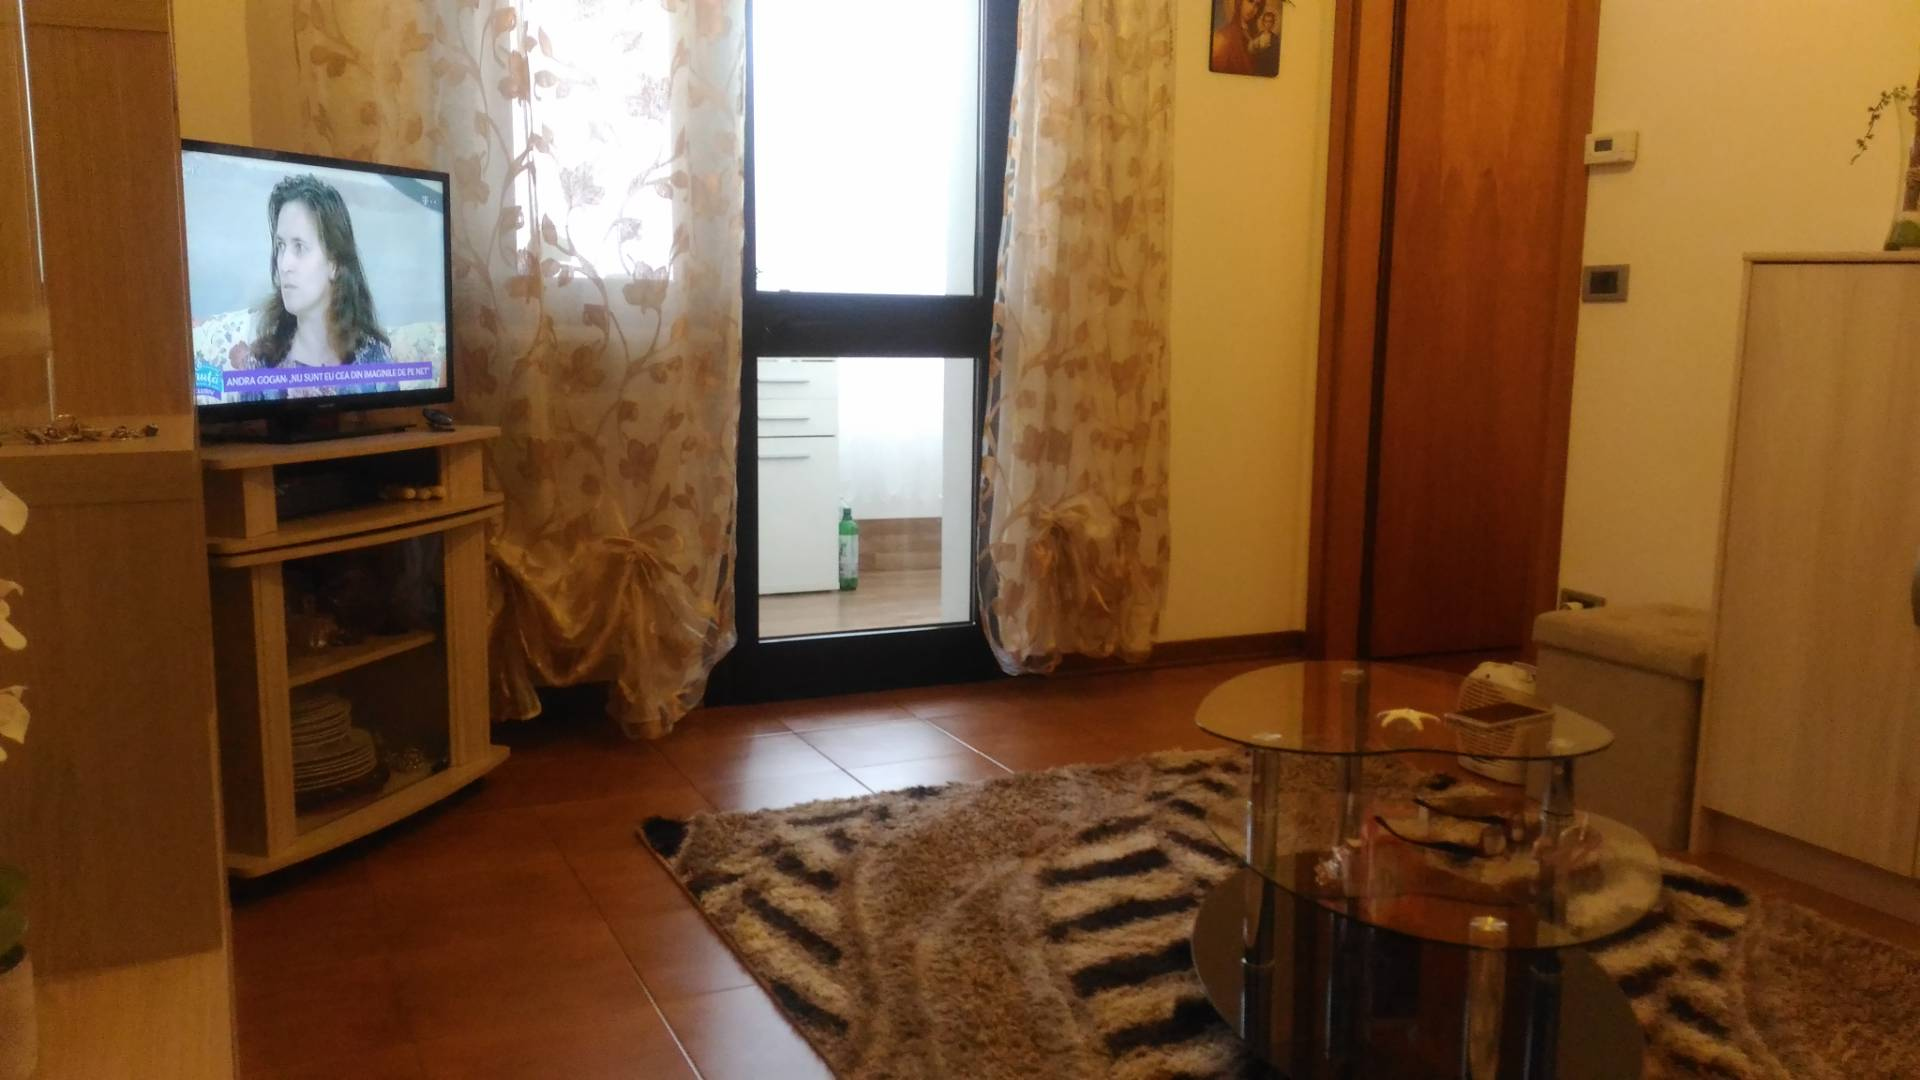 Appartamento in vendita a Udine, 2 locali, zona Località: BORGOSTAZIONE, prezzo € 58.000 | PortaleAgenzieImmobiliari.it